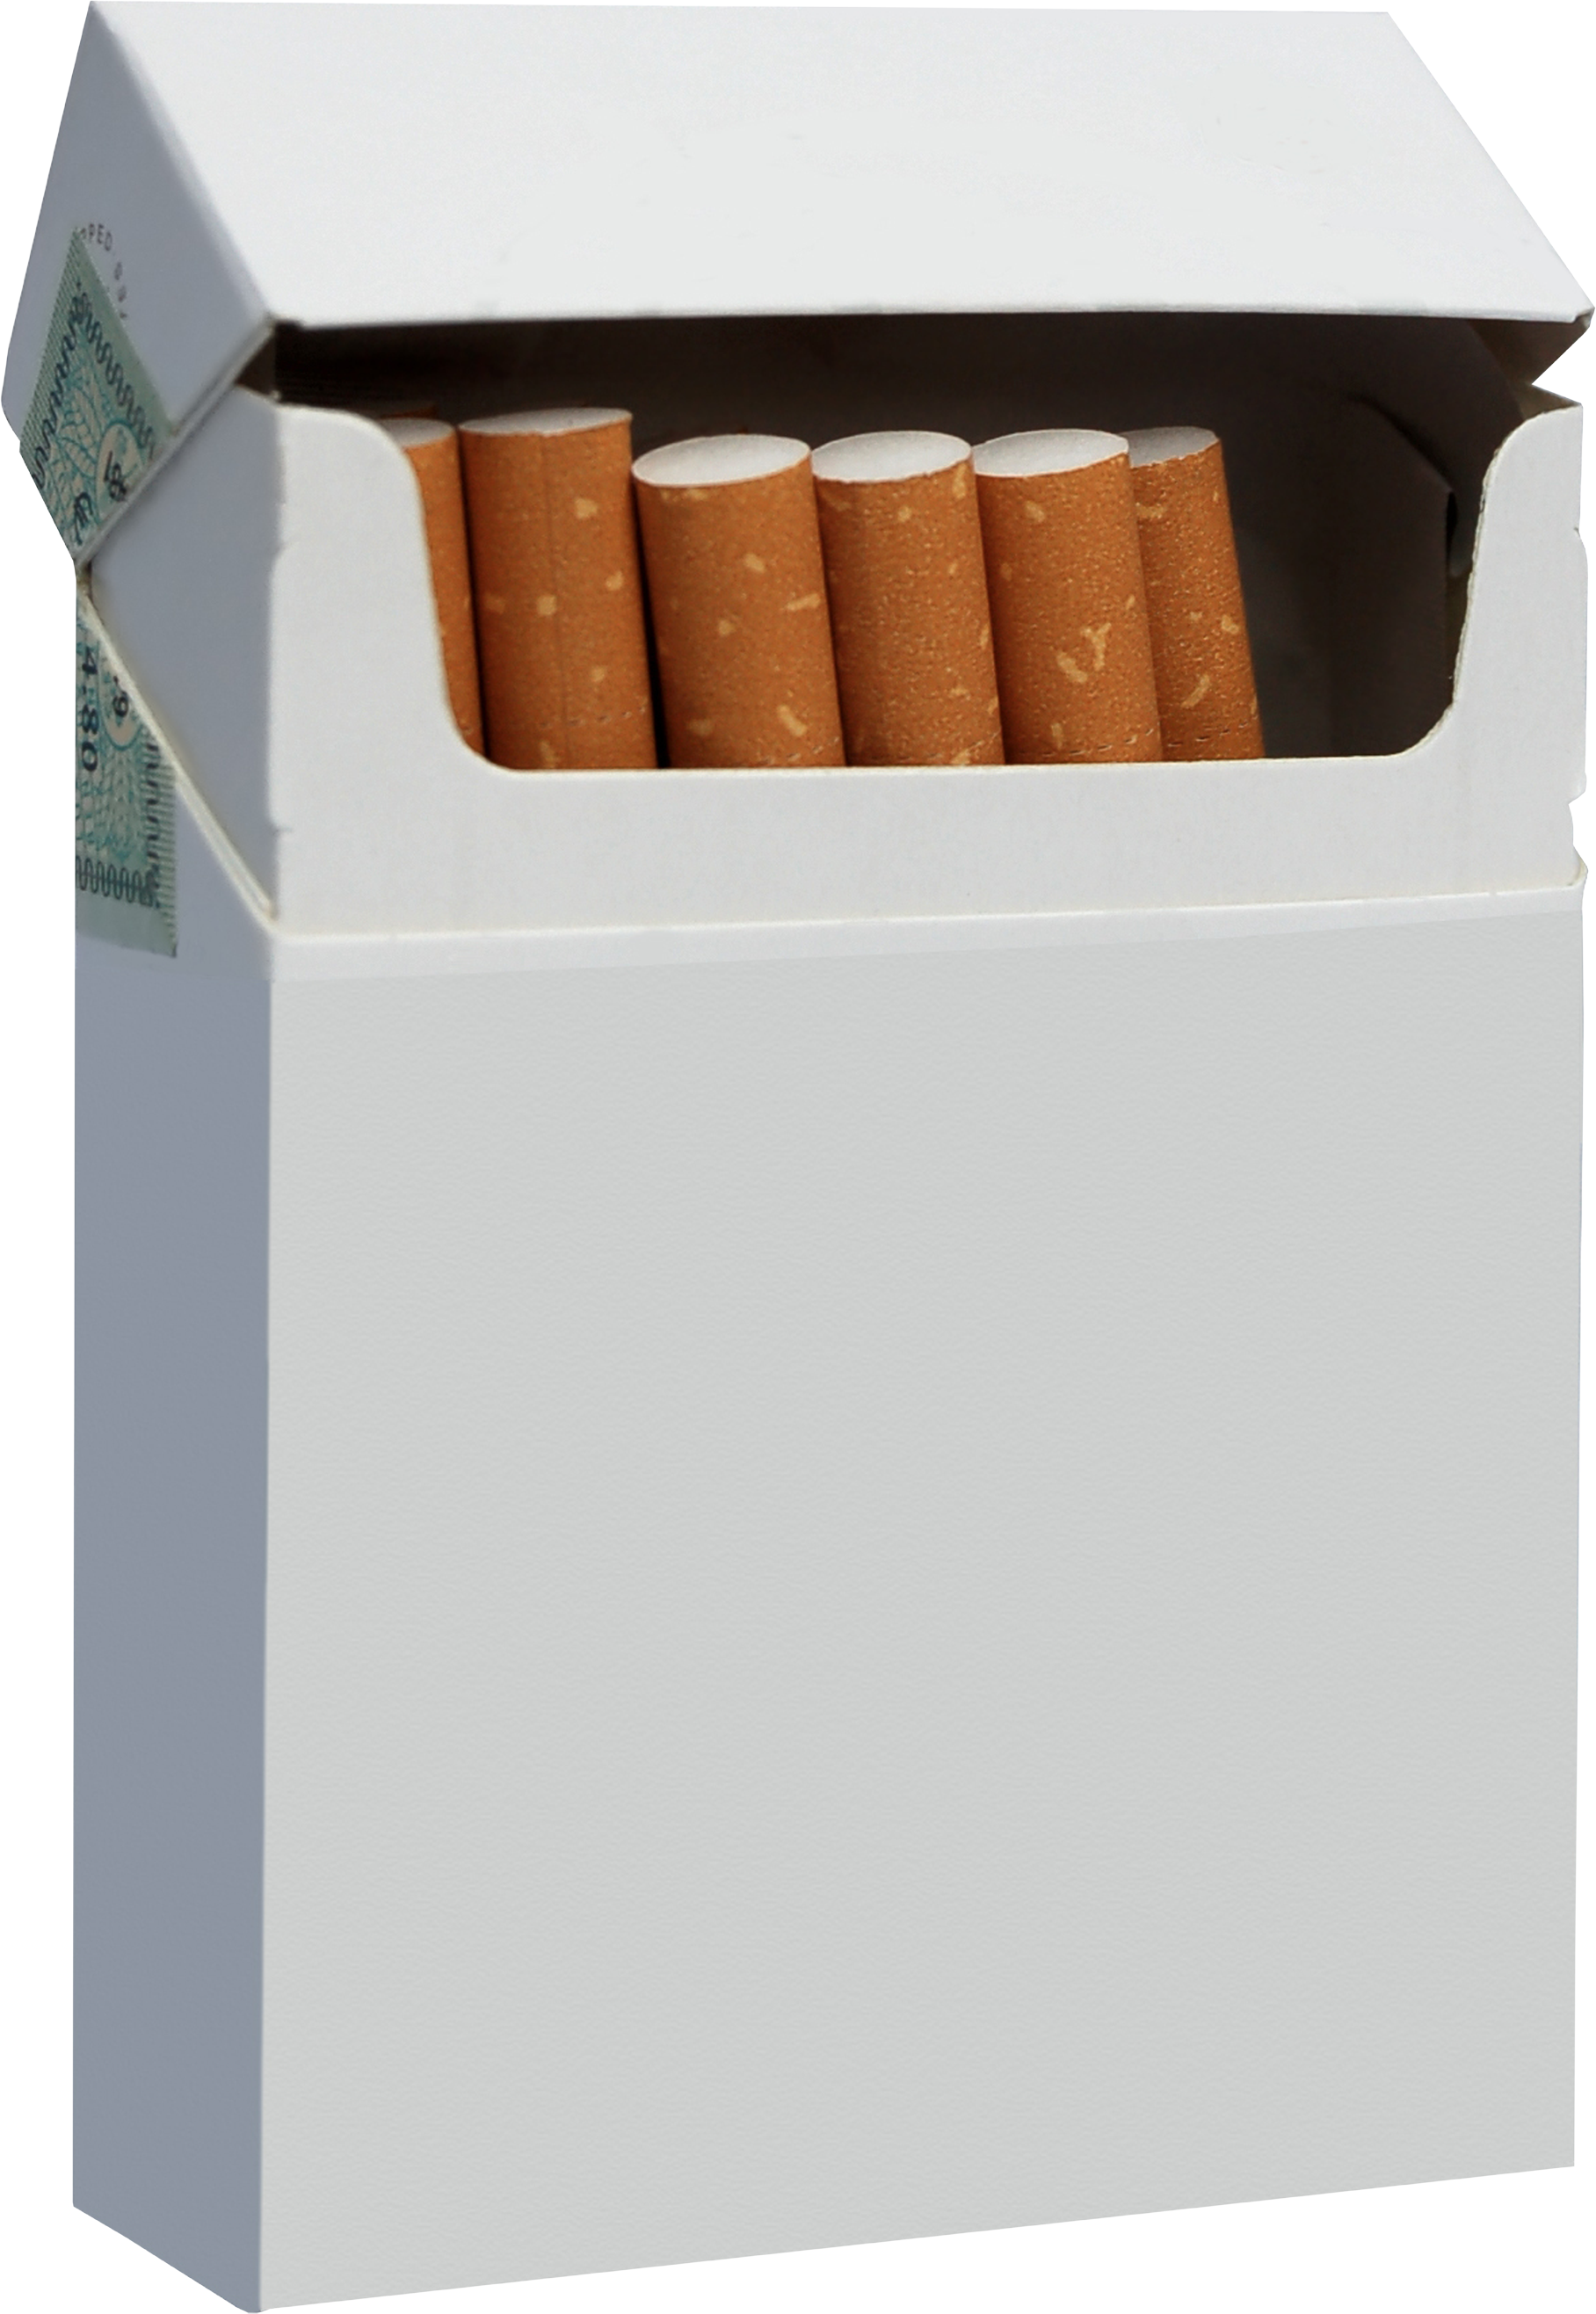 सिगरेट का एक पैकेट